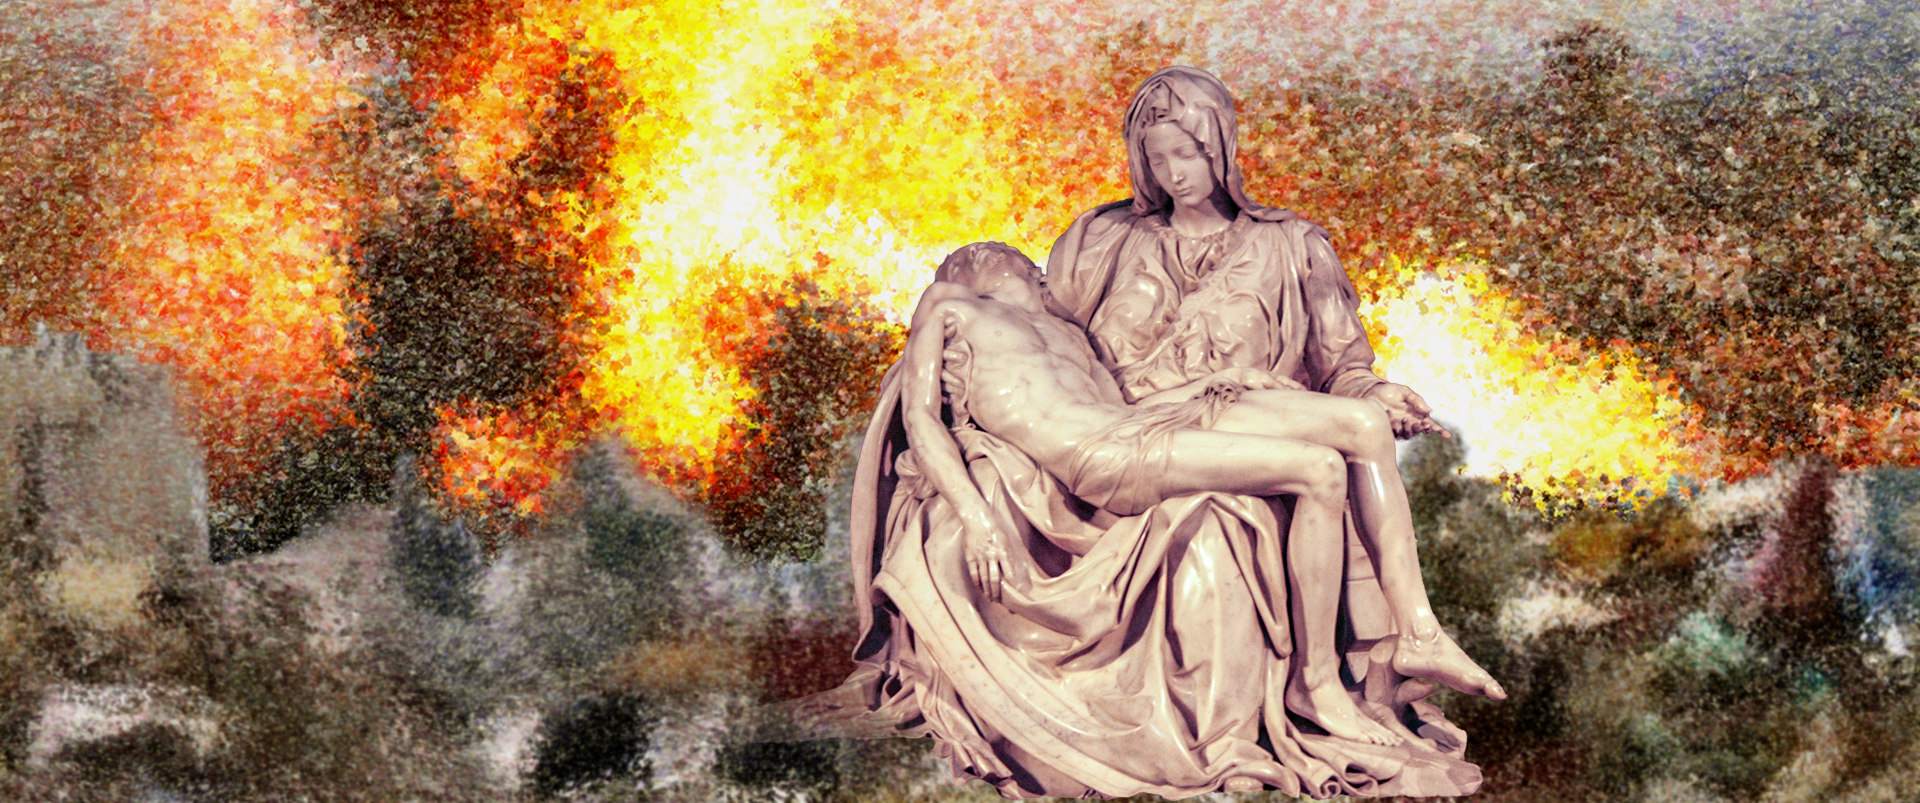 ミケランジェロ作ピエタと爆撃を受けるガザの画像。聖なる週にもかかわらず、命を落としたわが子を抱く悲しみの母たちの涙が聖地を濡らします